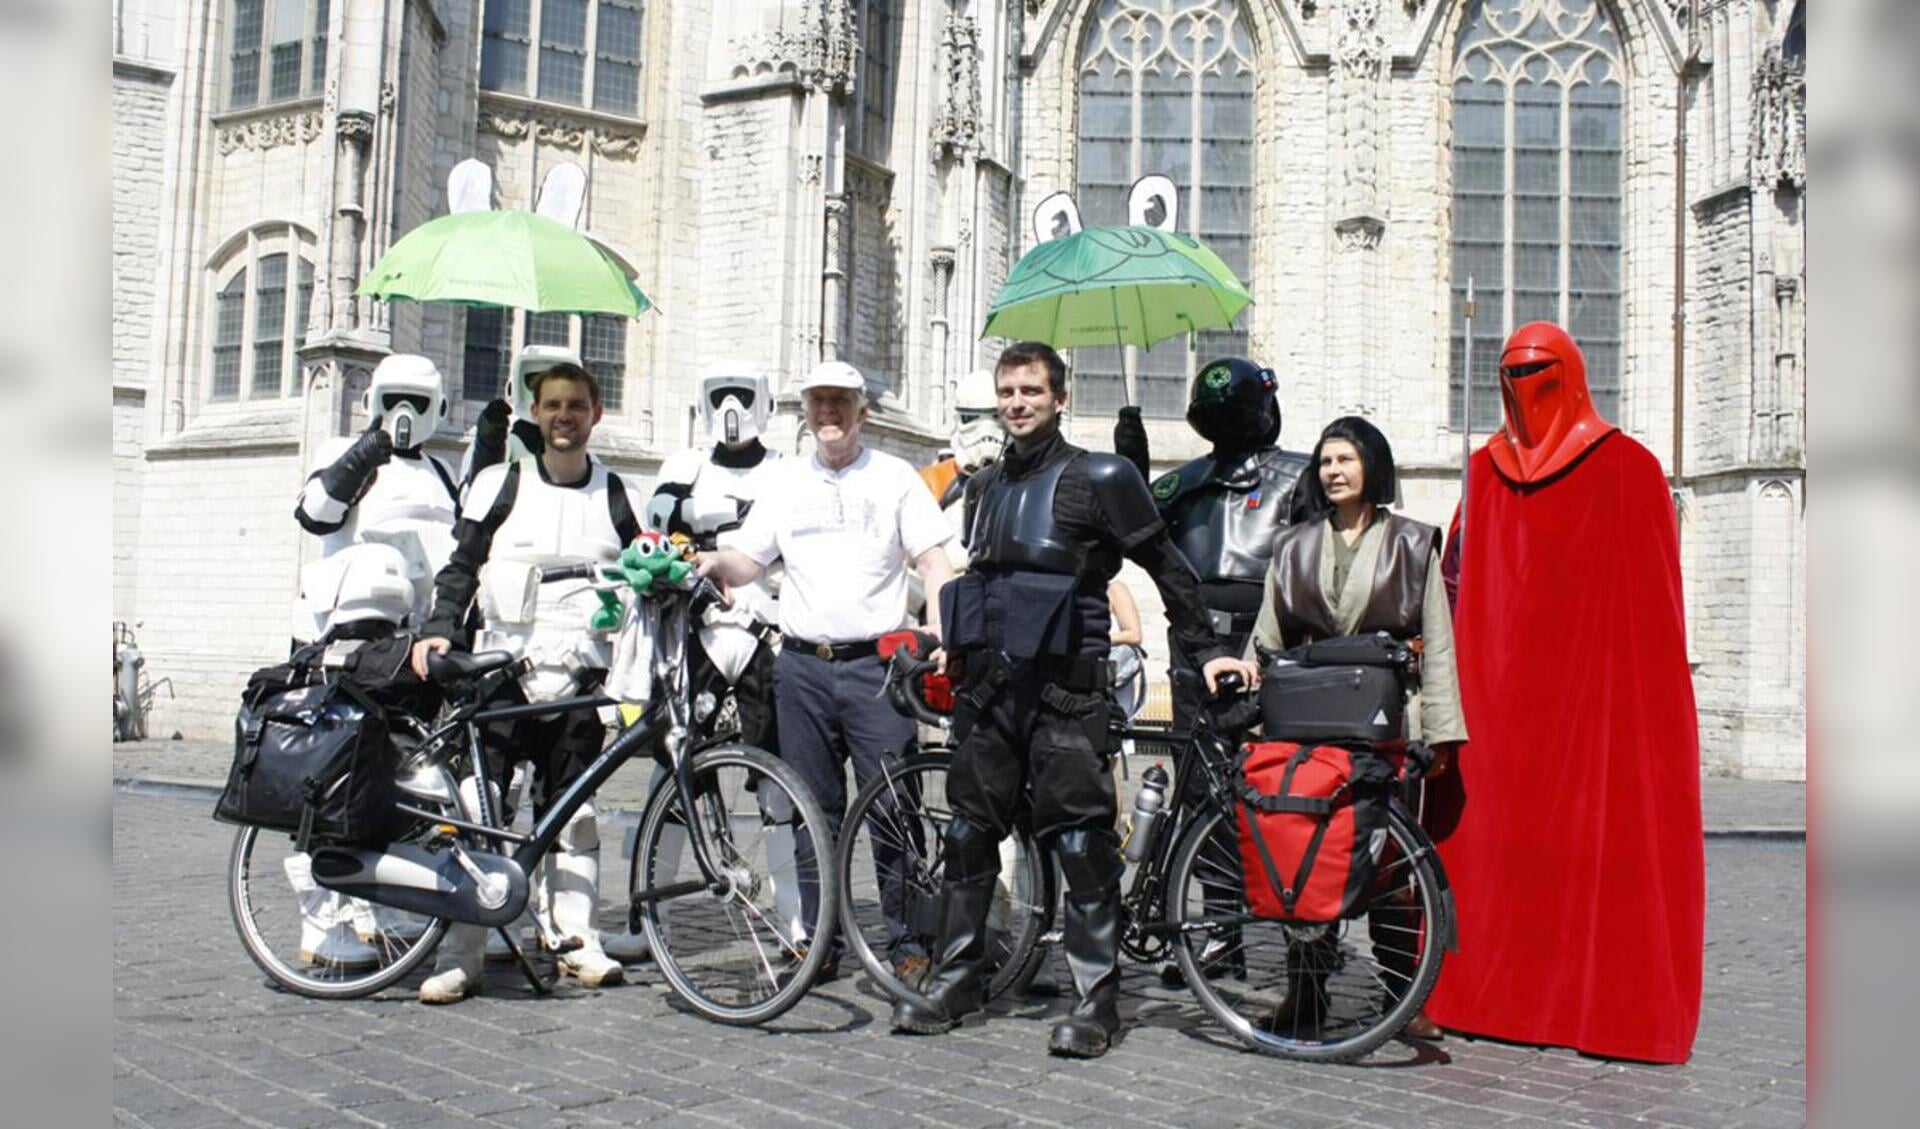 Star Wars op de Grote Markt. Twee Biker Scouts fietsen voor het goede doel. foto Wijnand Nijs